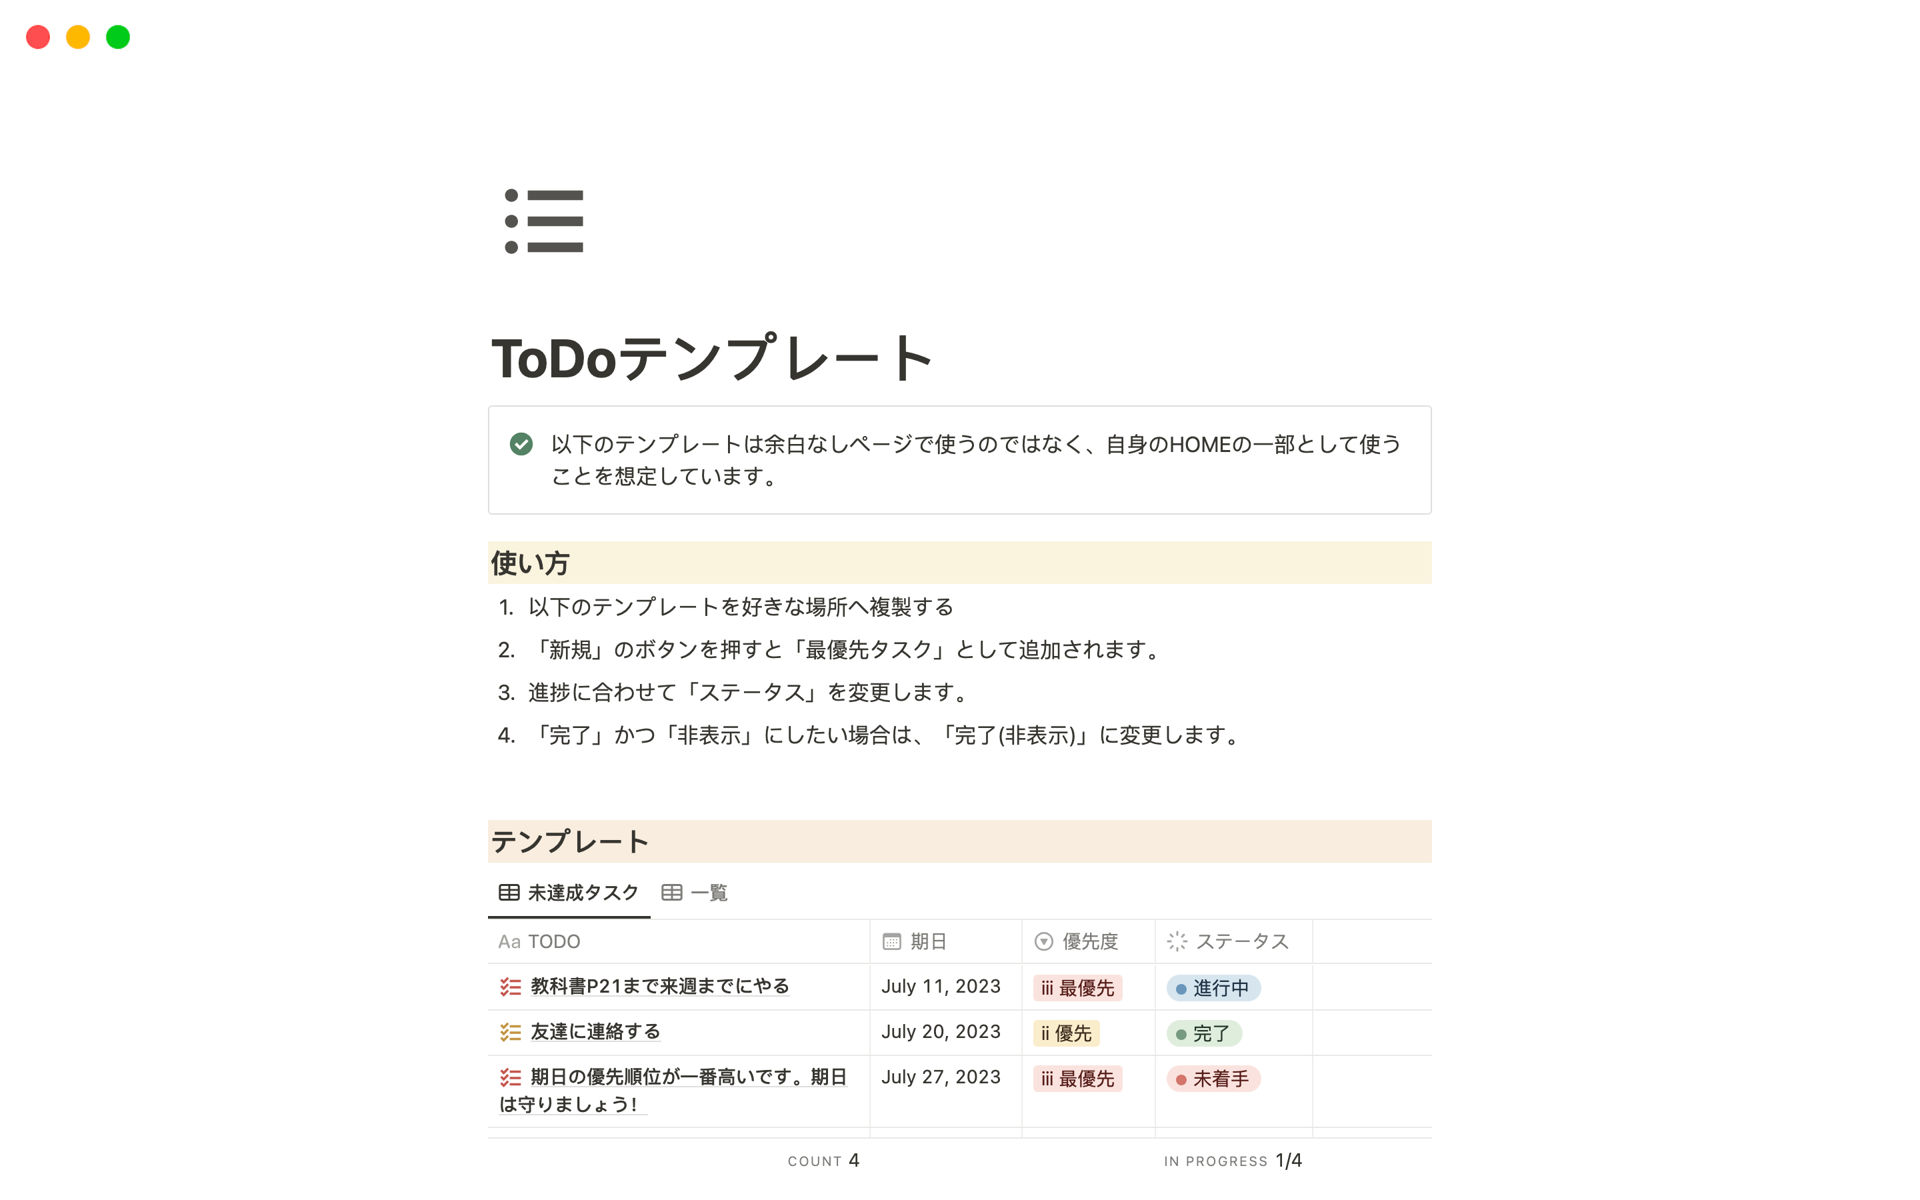 En forhåndsvisning av mal for 個人用ToDoリスト